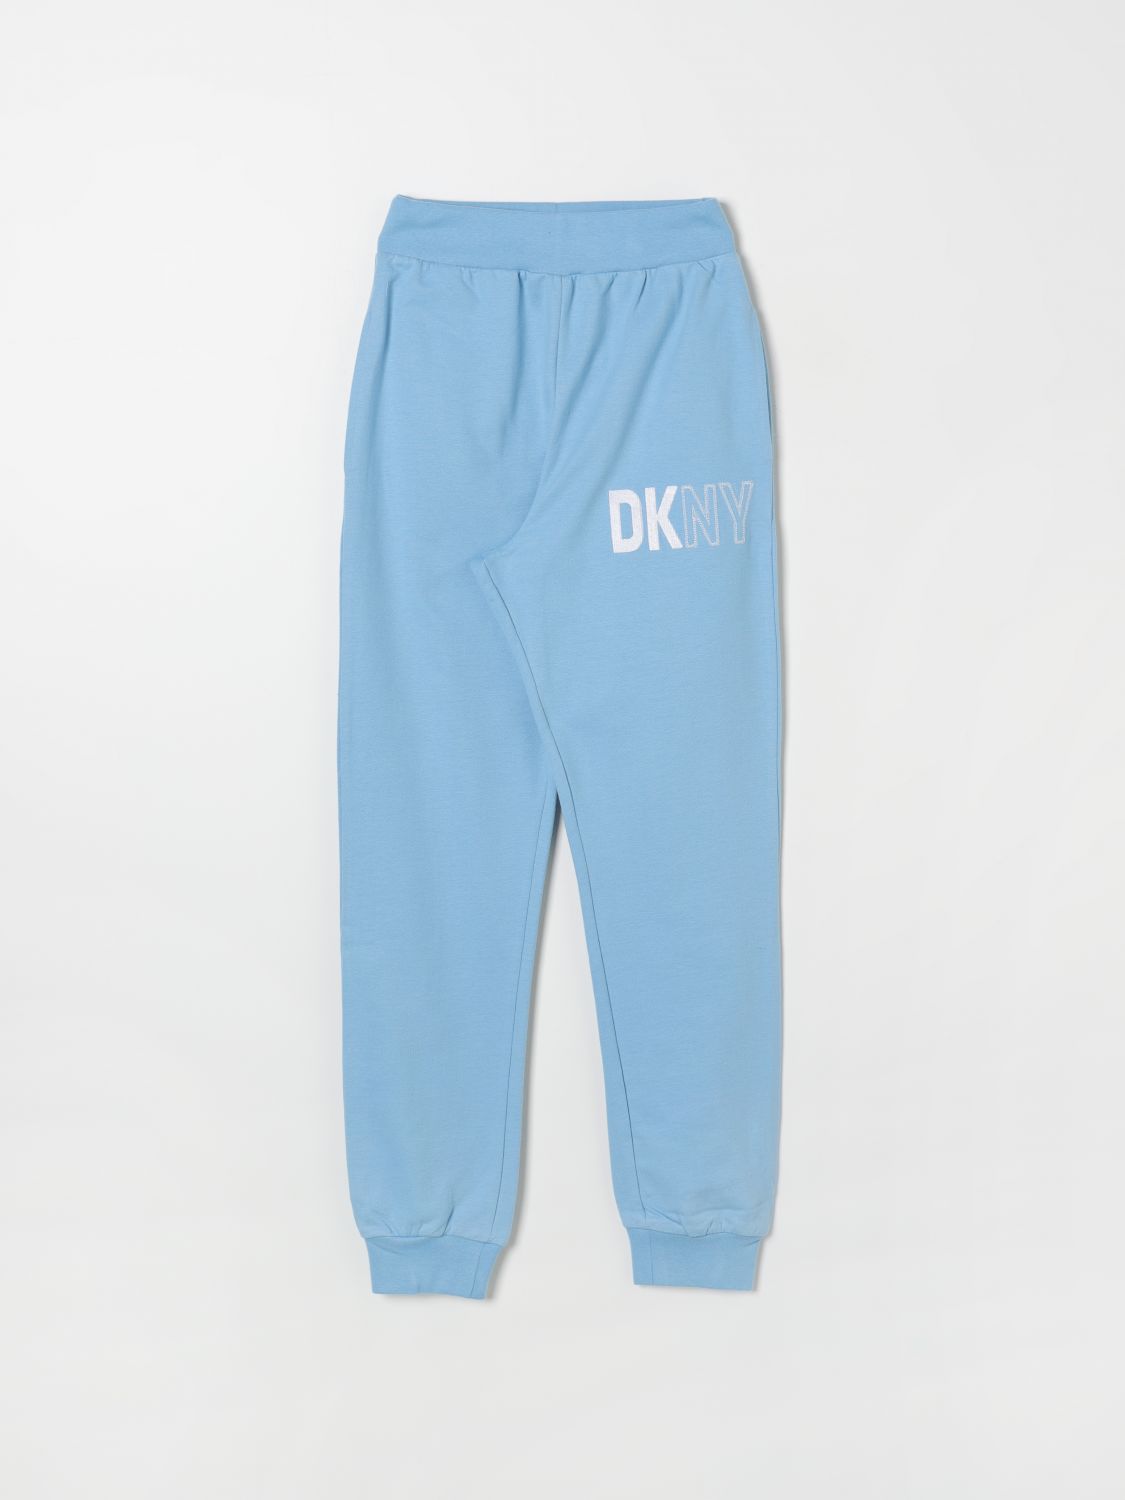 DKNY Pants DKNY Kids color Sky